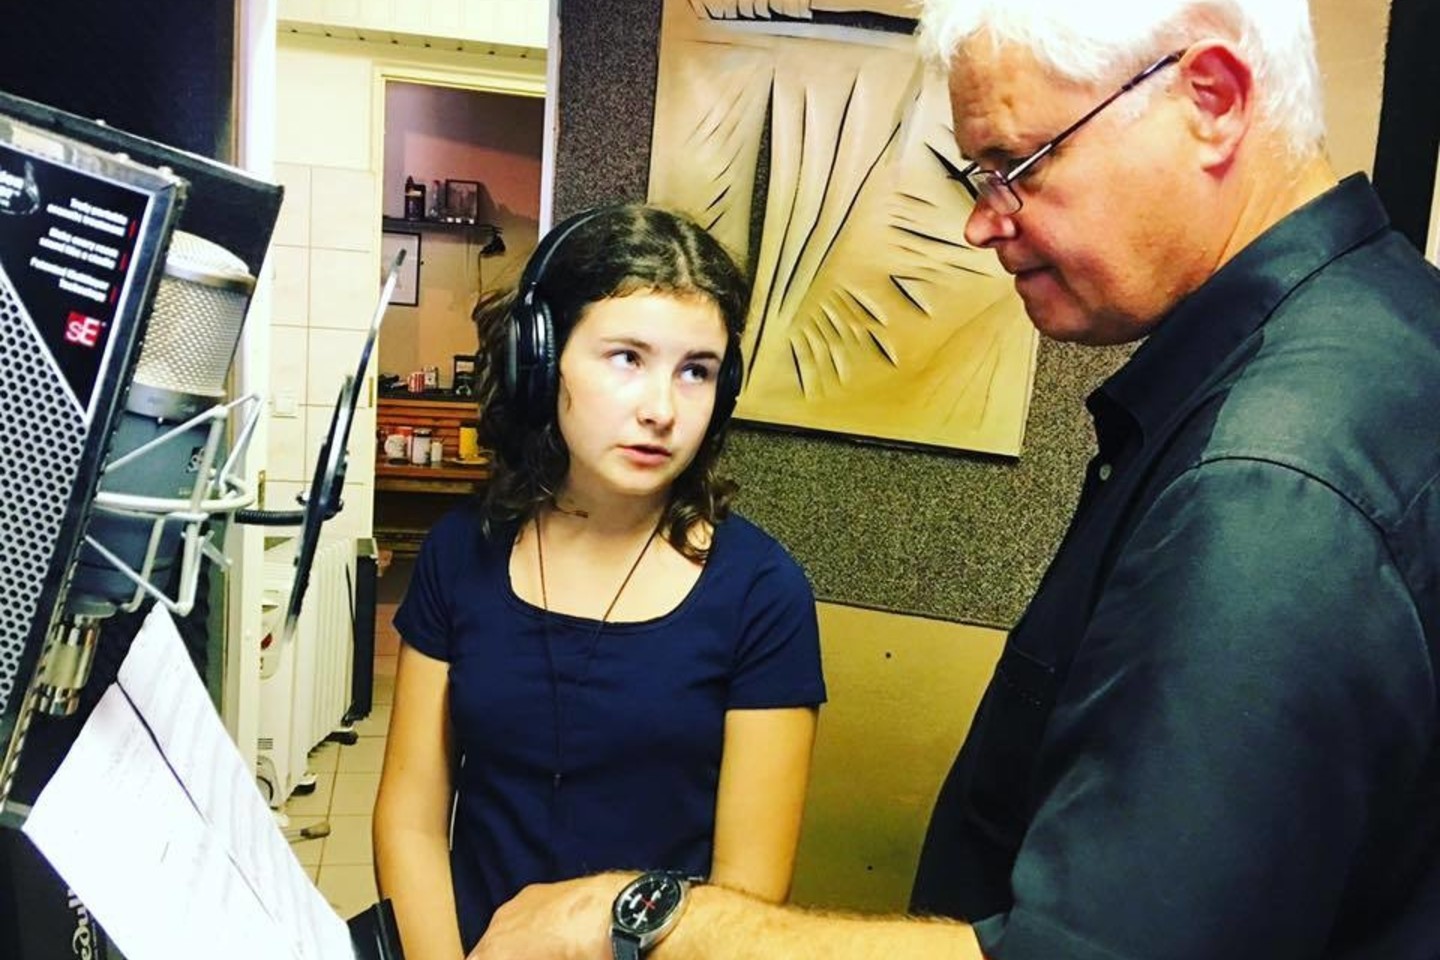 Klaipėdos meras su dukra įrašė savo miestui skirtą dainą.